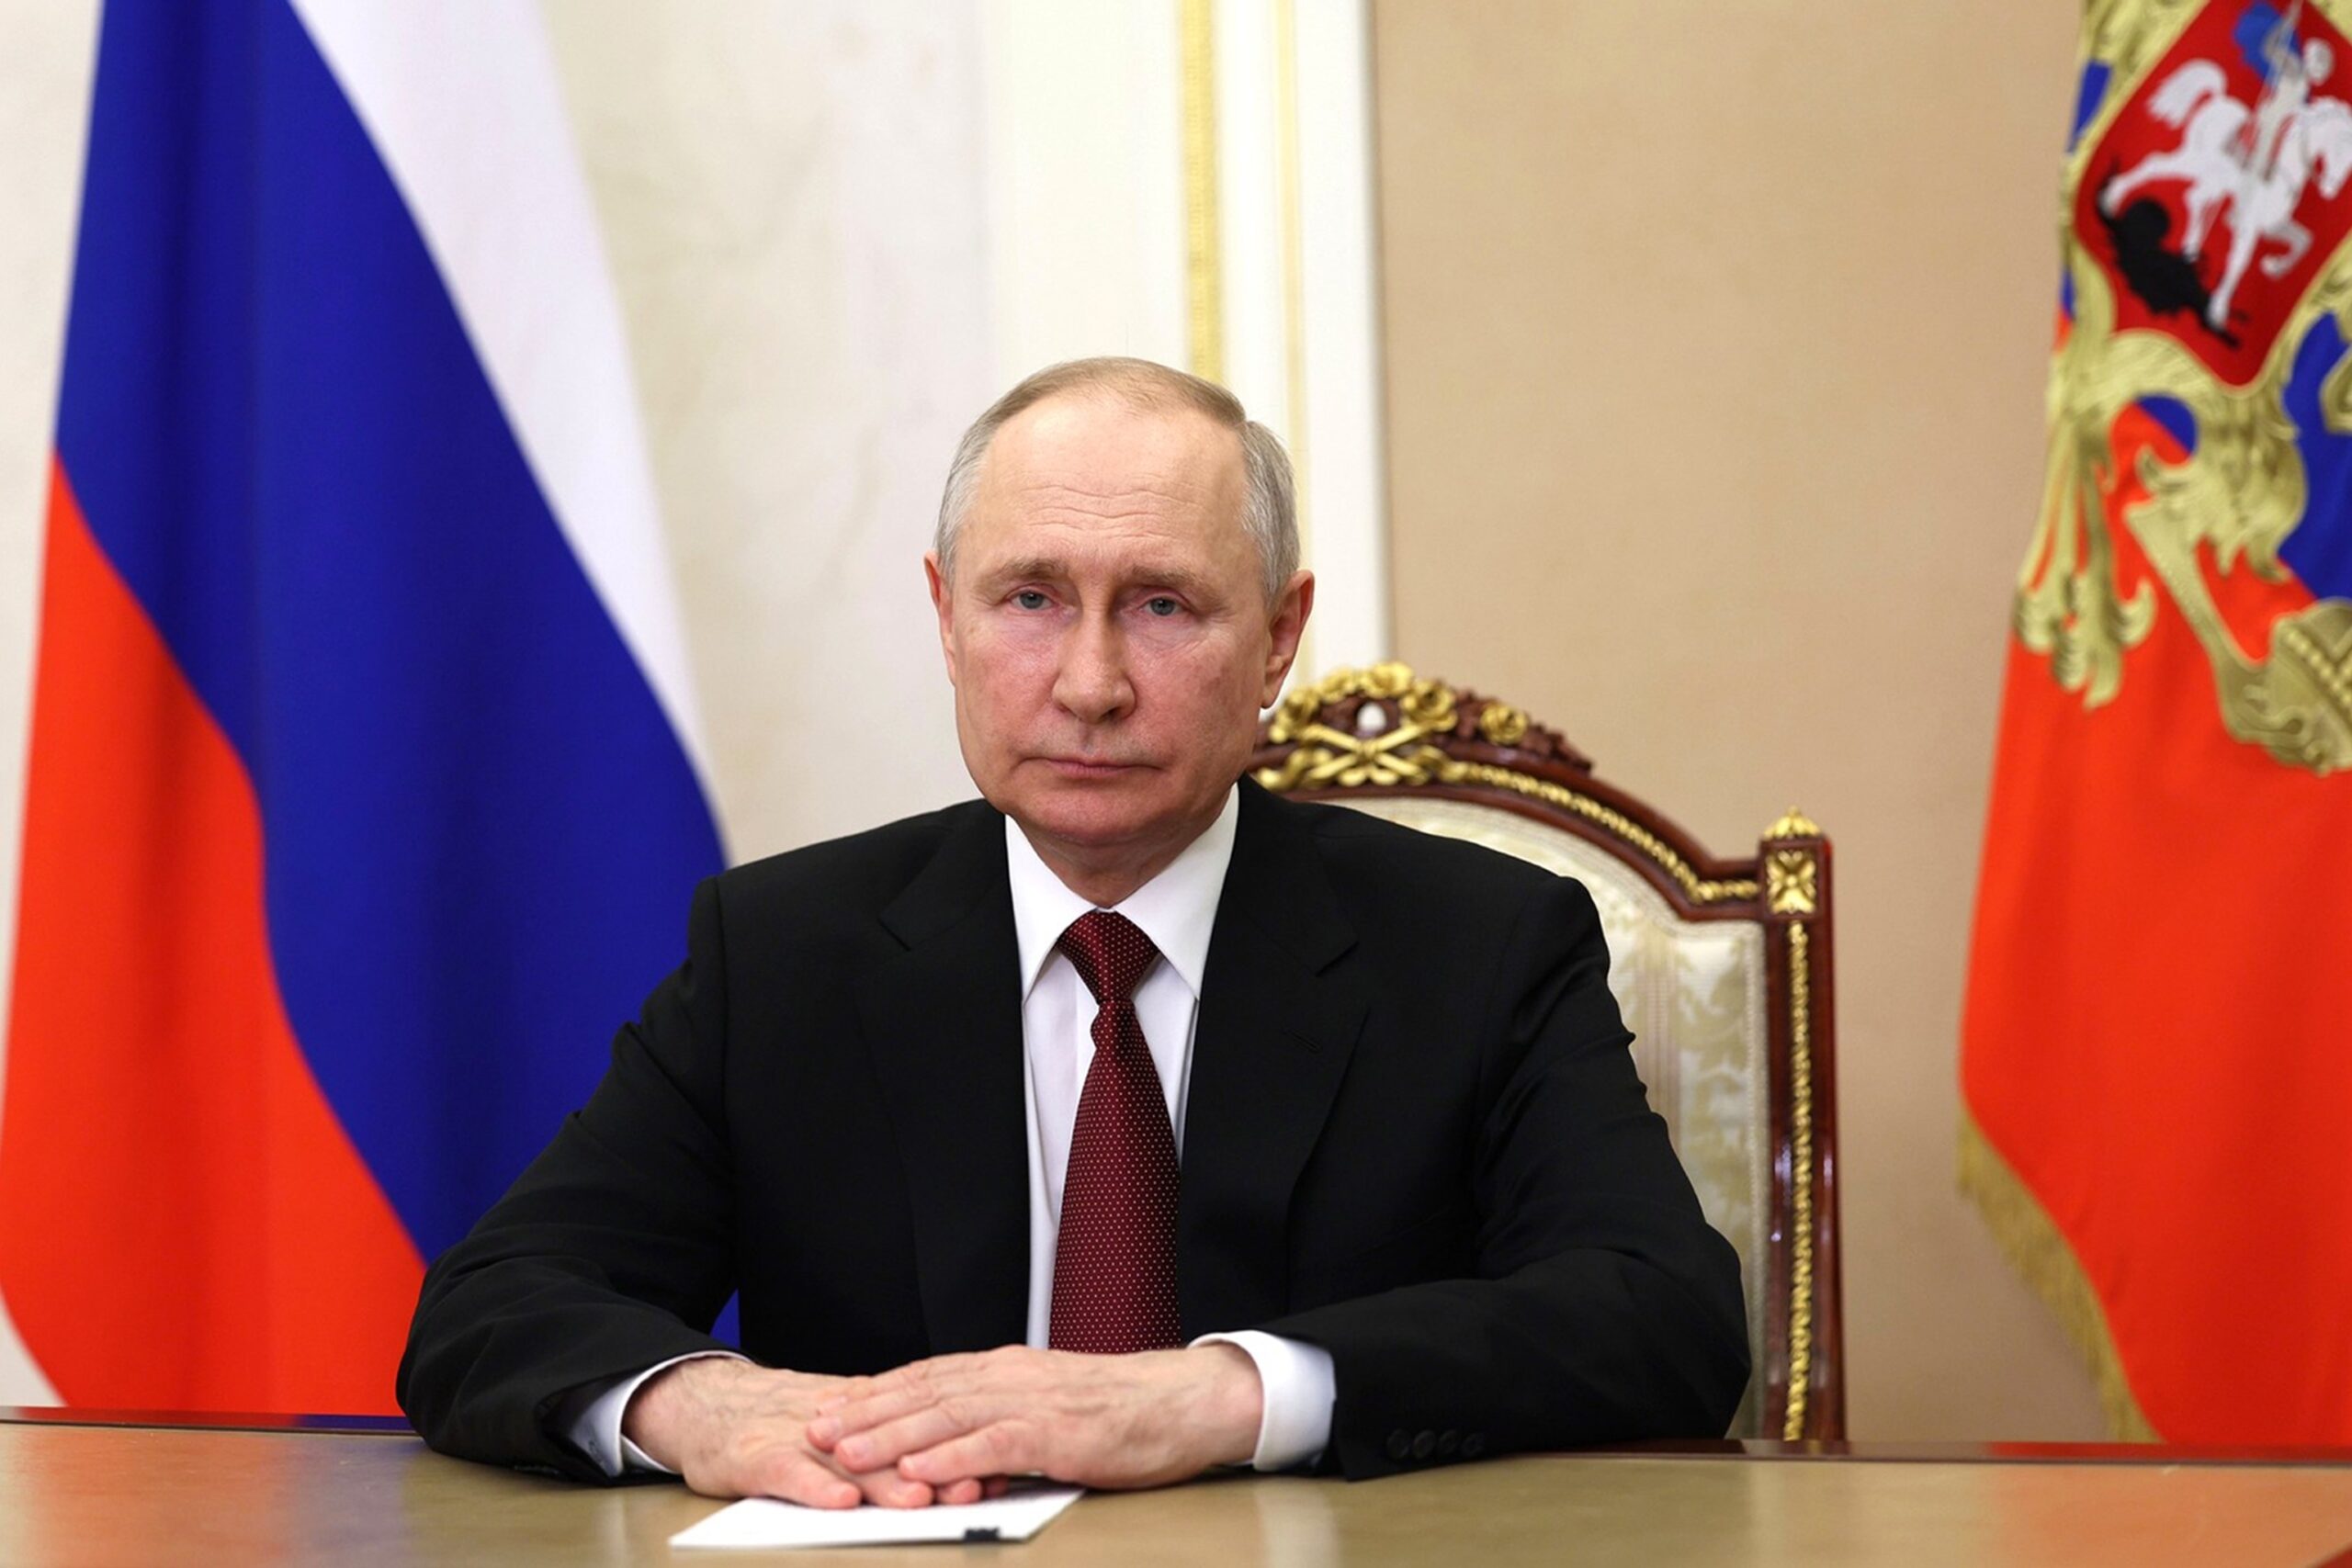 Ρωσία: Το διάγγελμα του Βλαντιμίρ Πούτιν μετά την ανταρσία της Βάγκνερ – «Οι οργανωτές θα οδηγηθούν στη Δικαιοσύνη»